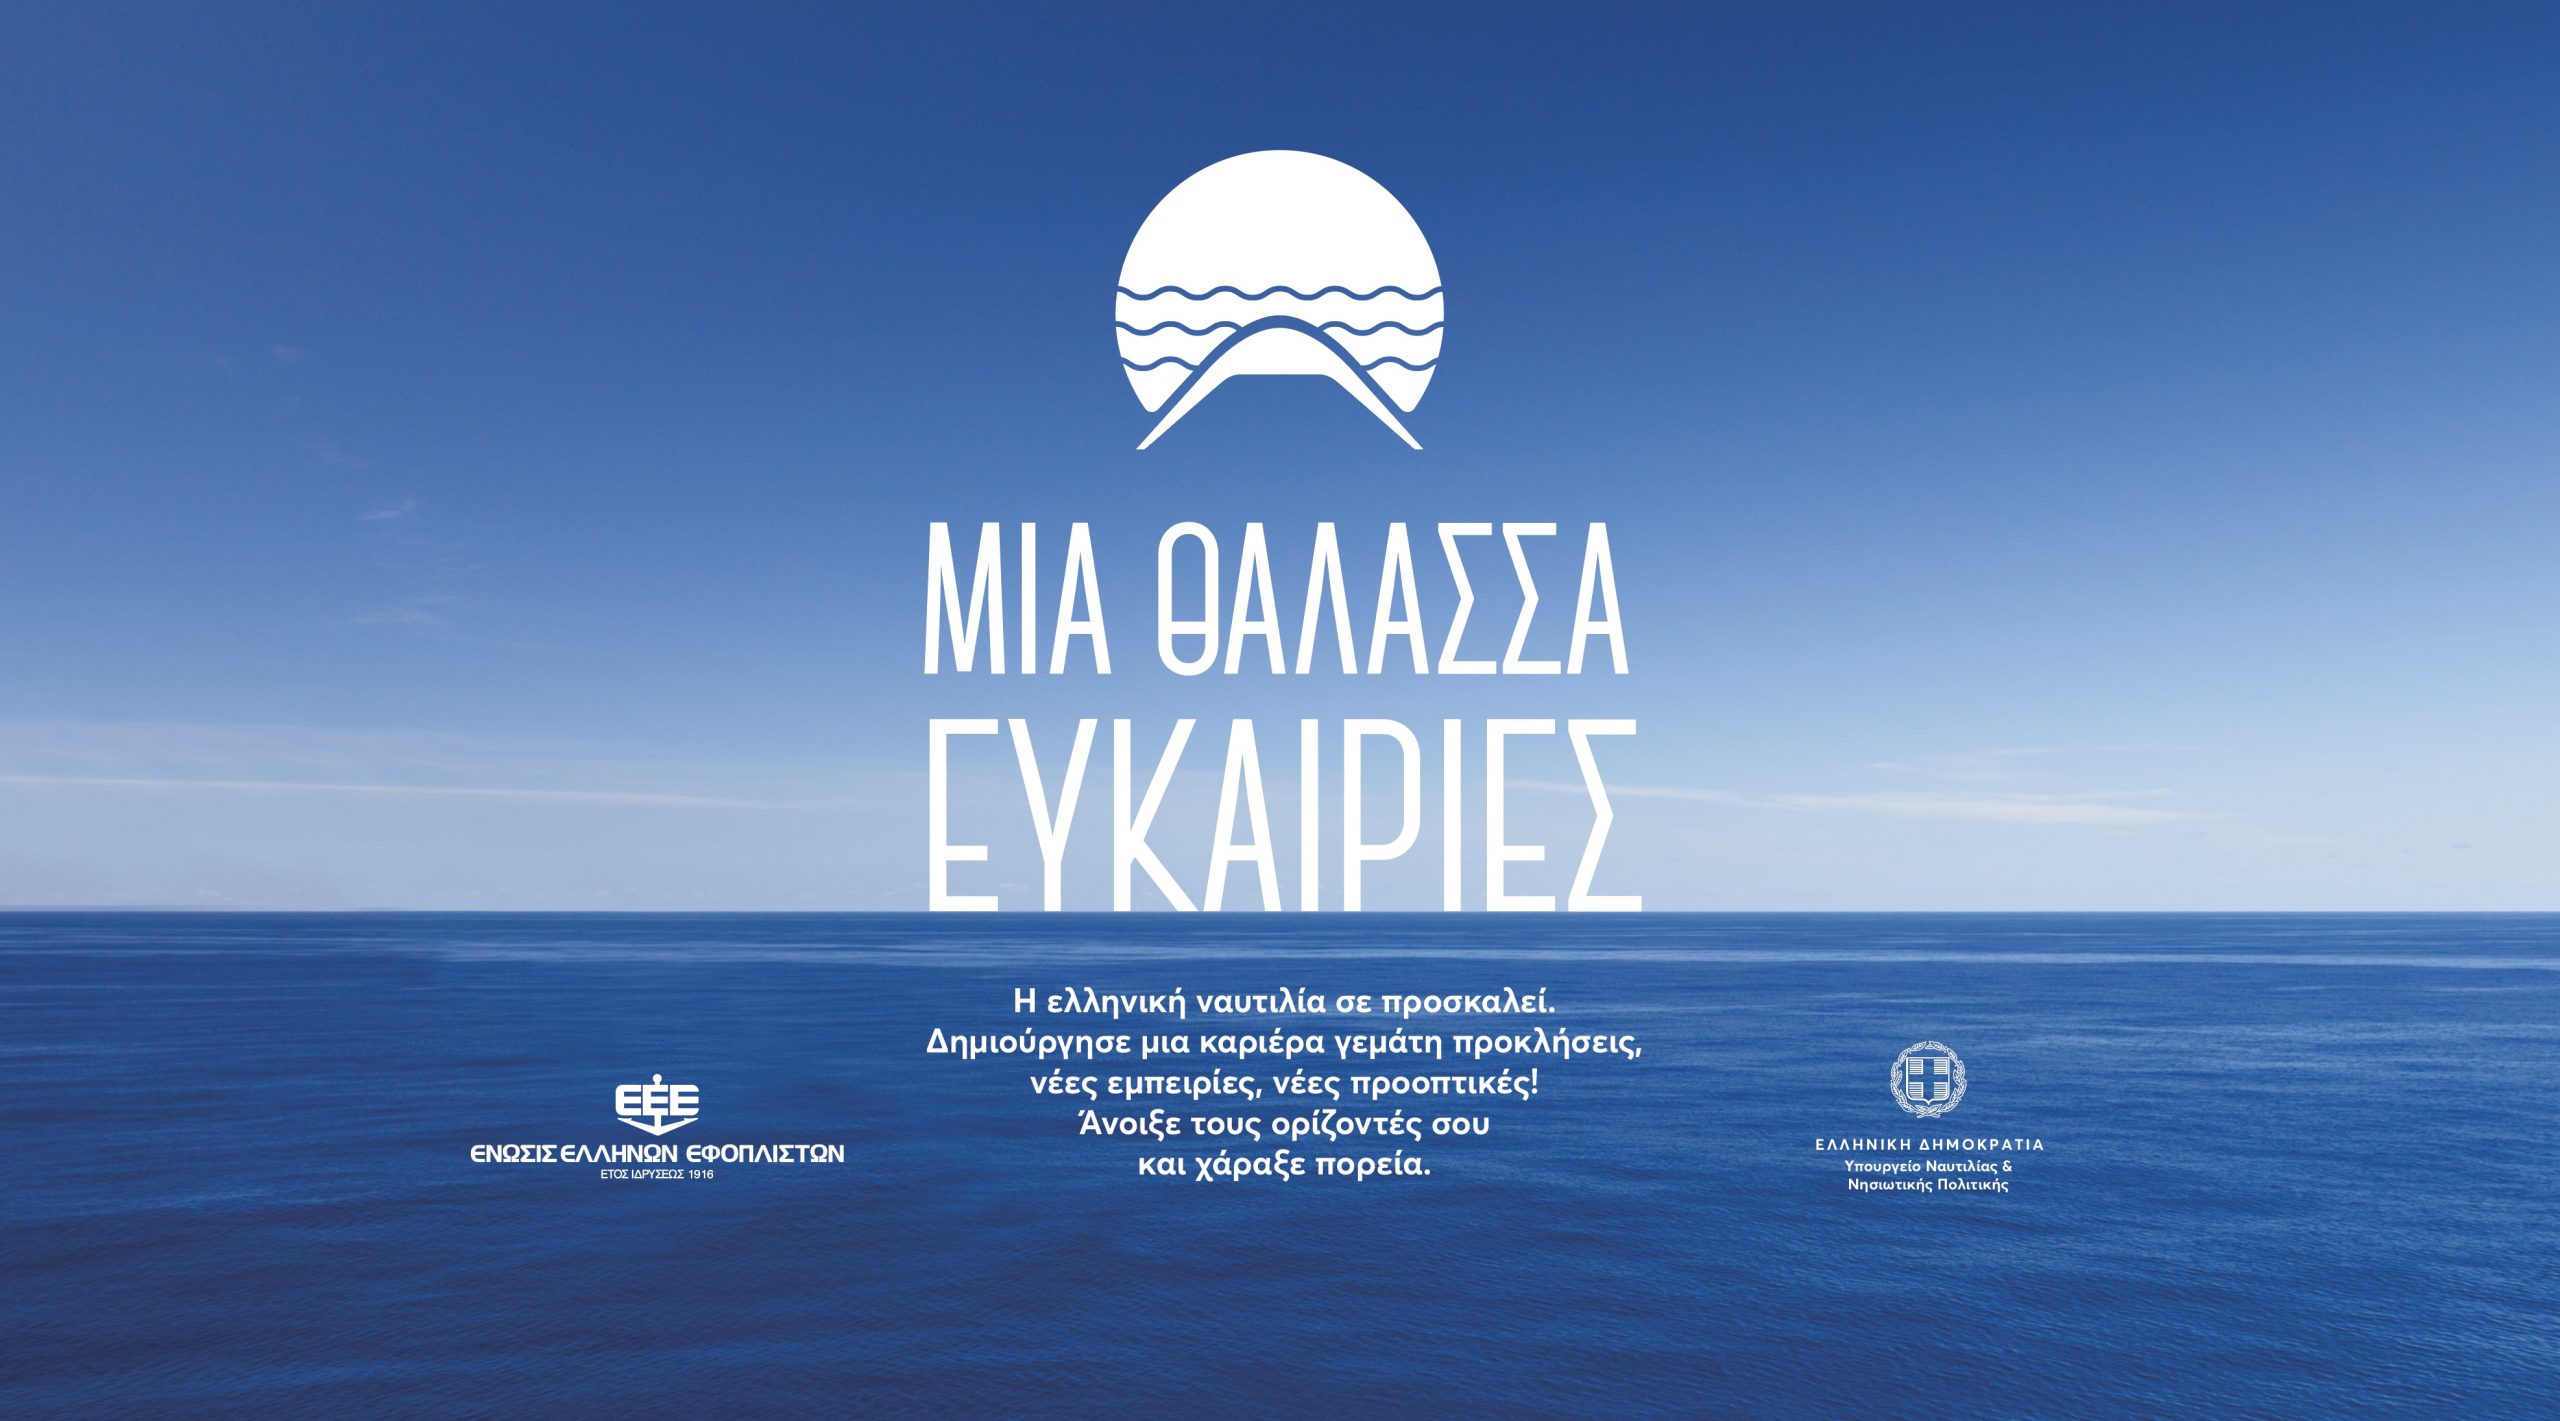 Ένωση Ελλήνων Εφοπλιστών: Εκστρατεία προσέλκυσης νέων στο ναυτικό επάγγελμα